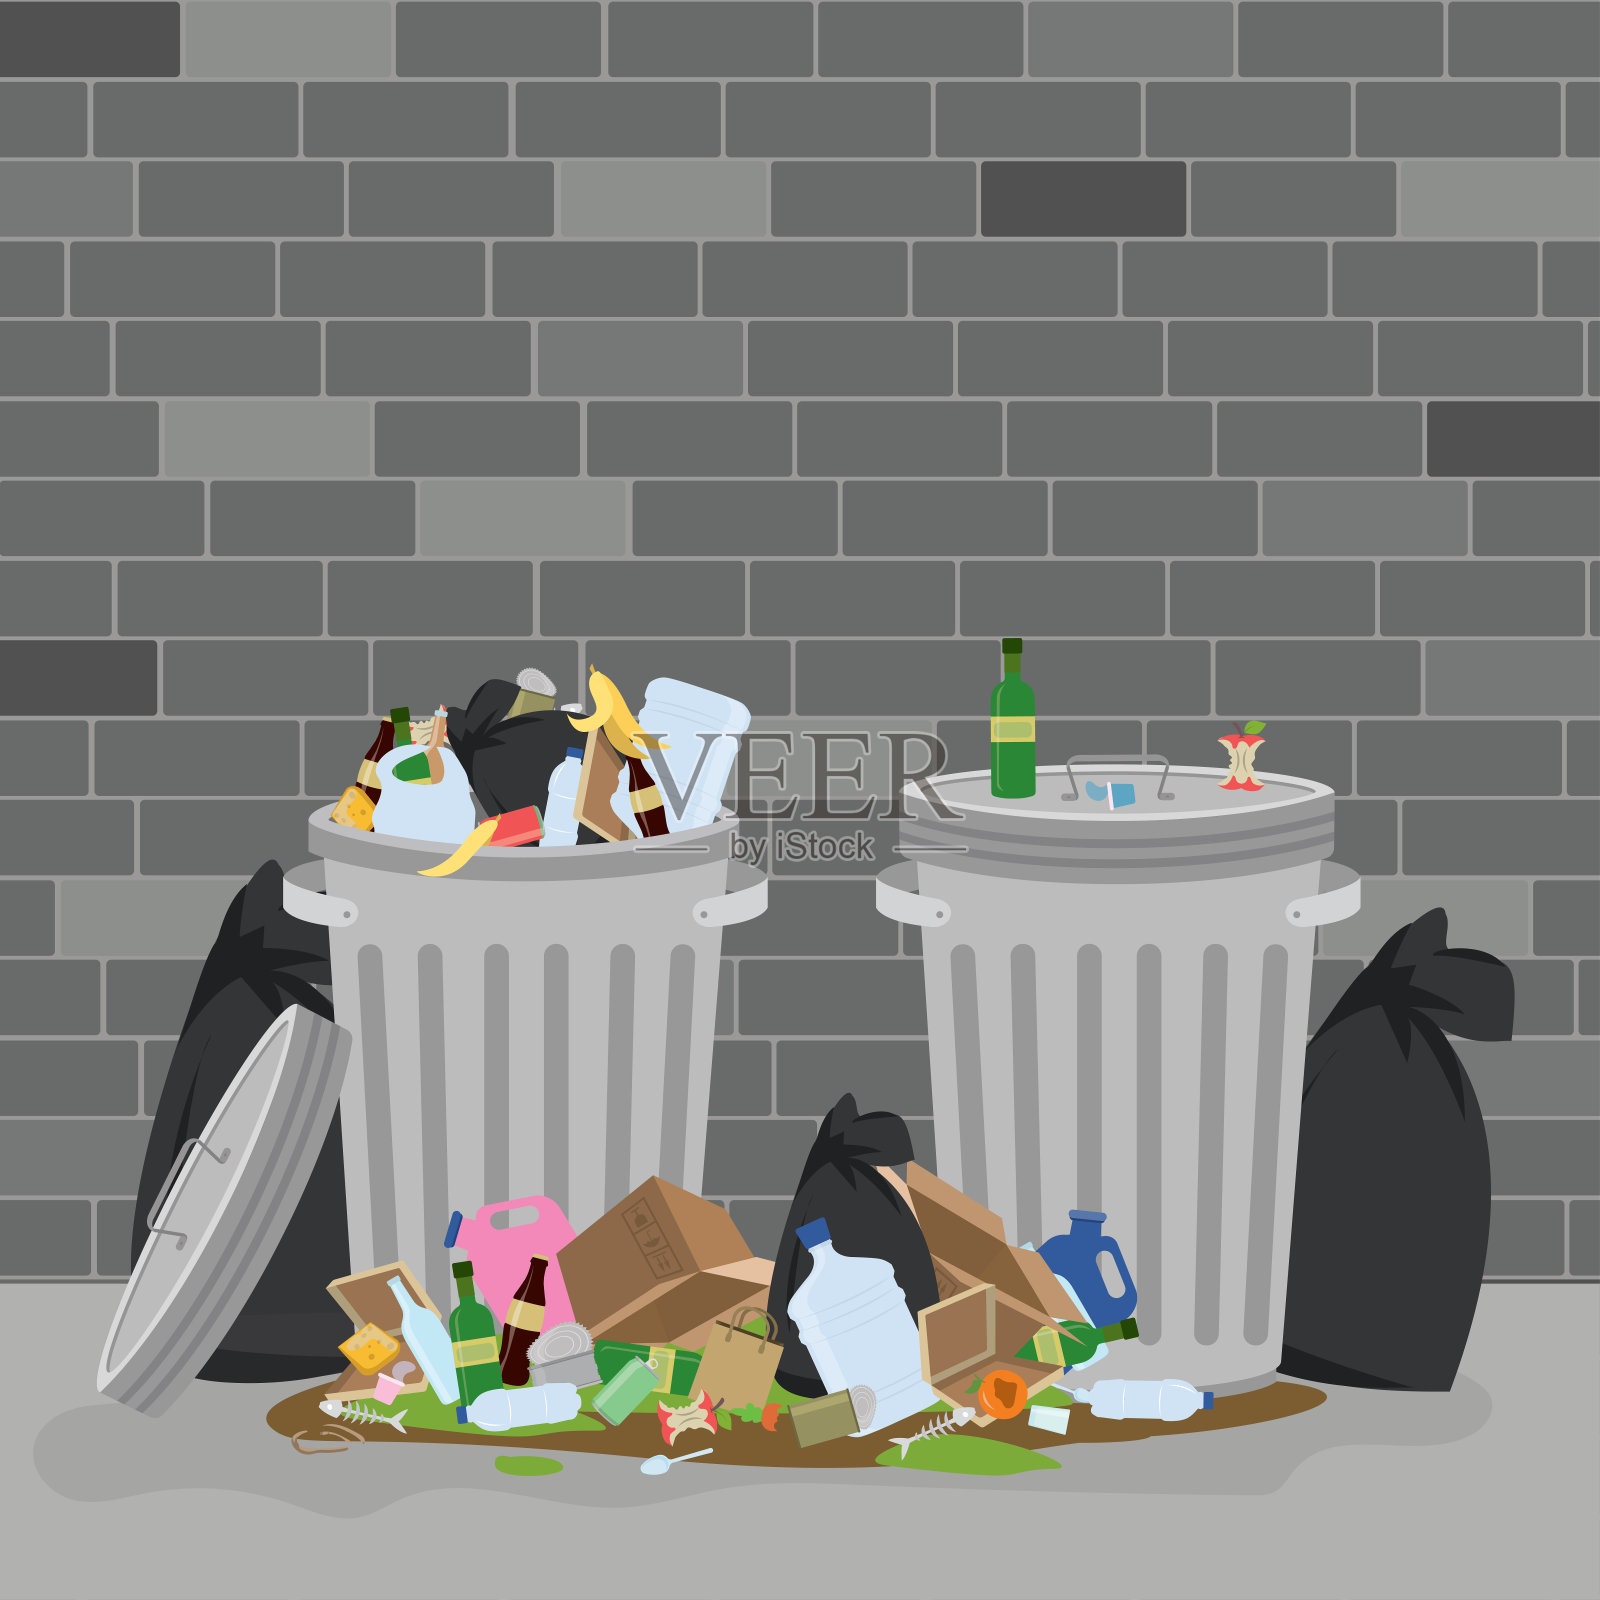 两个装满垃圾的金属垃圾桶。地板上有肮脏的垃圾和垃圾袋。城市污染设计元素图片